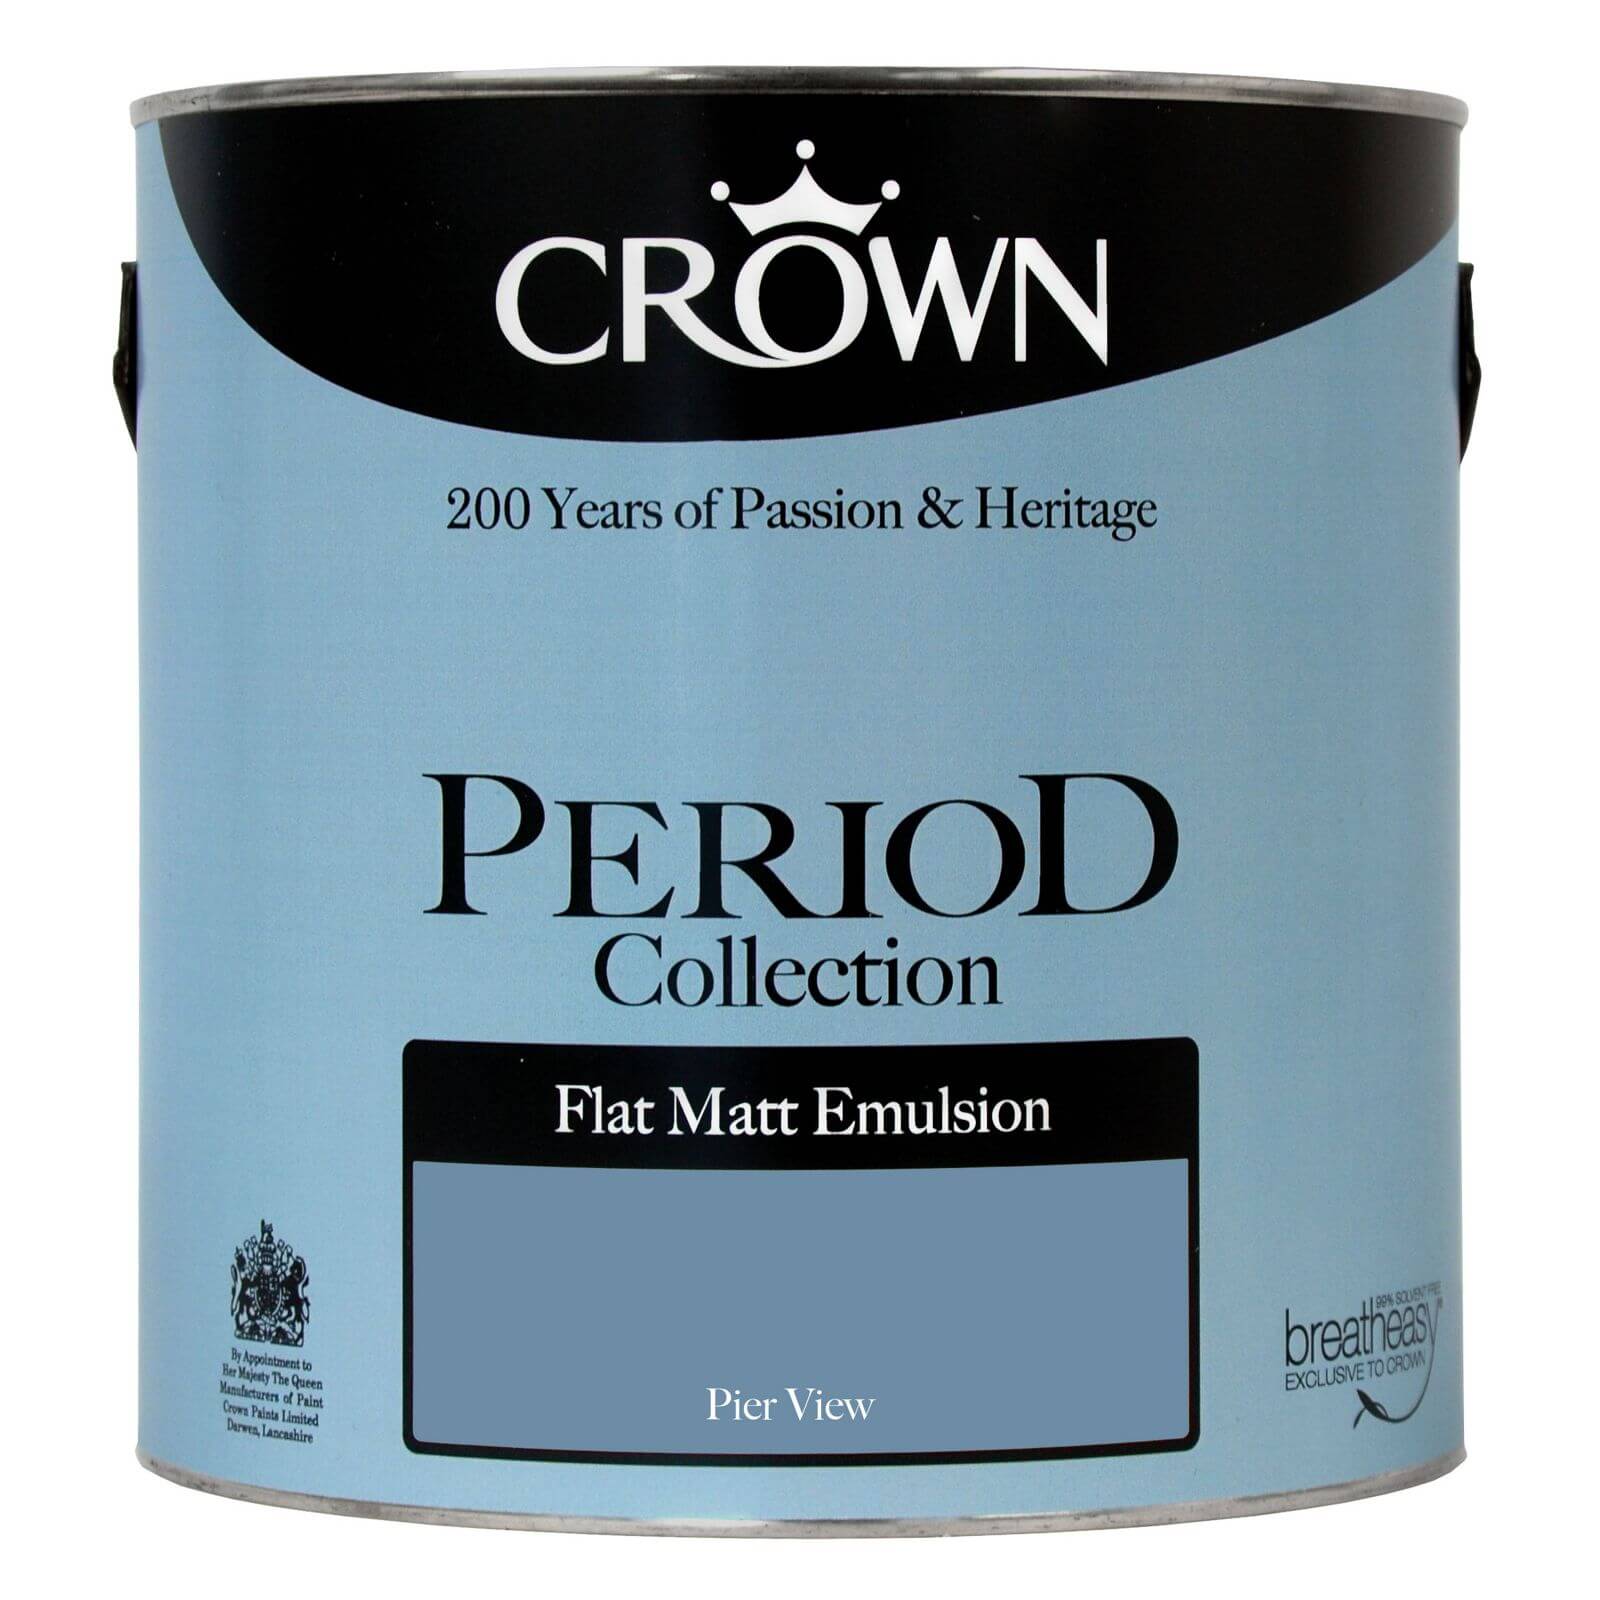 Crown Period Collection Pier View - Flat Matt Emulsion Paint - 2.5L